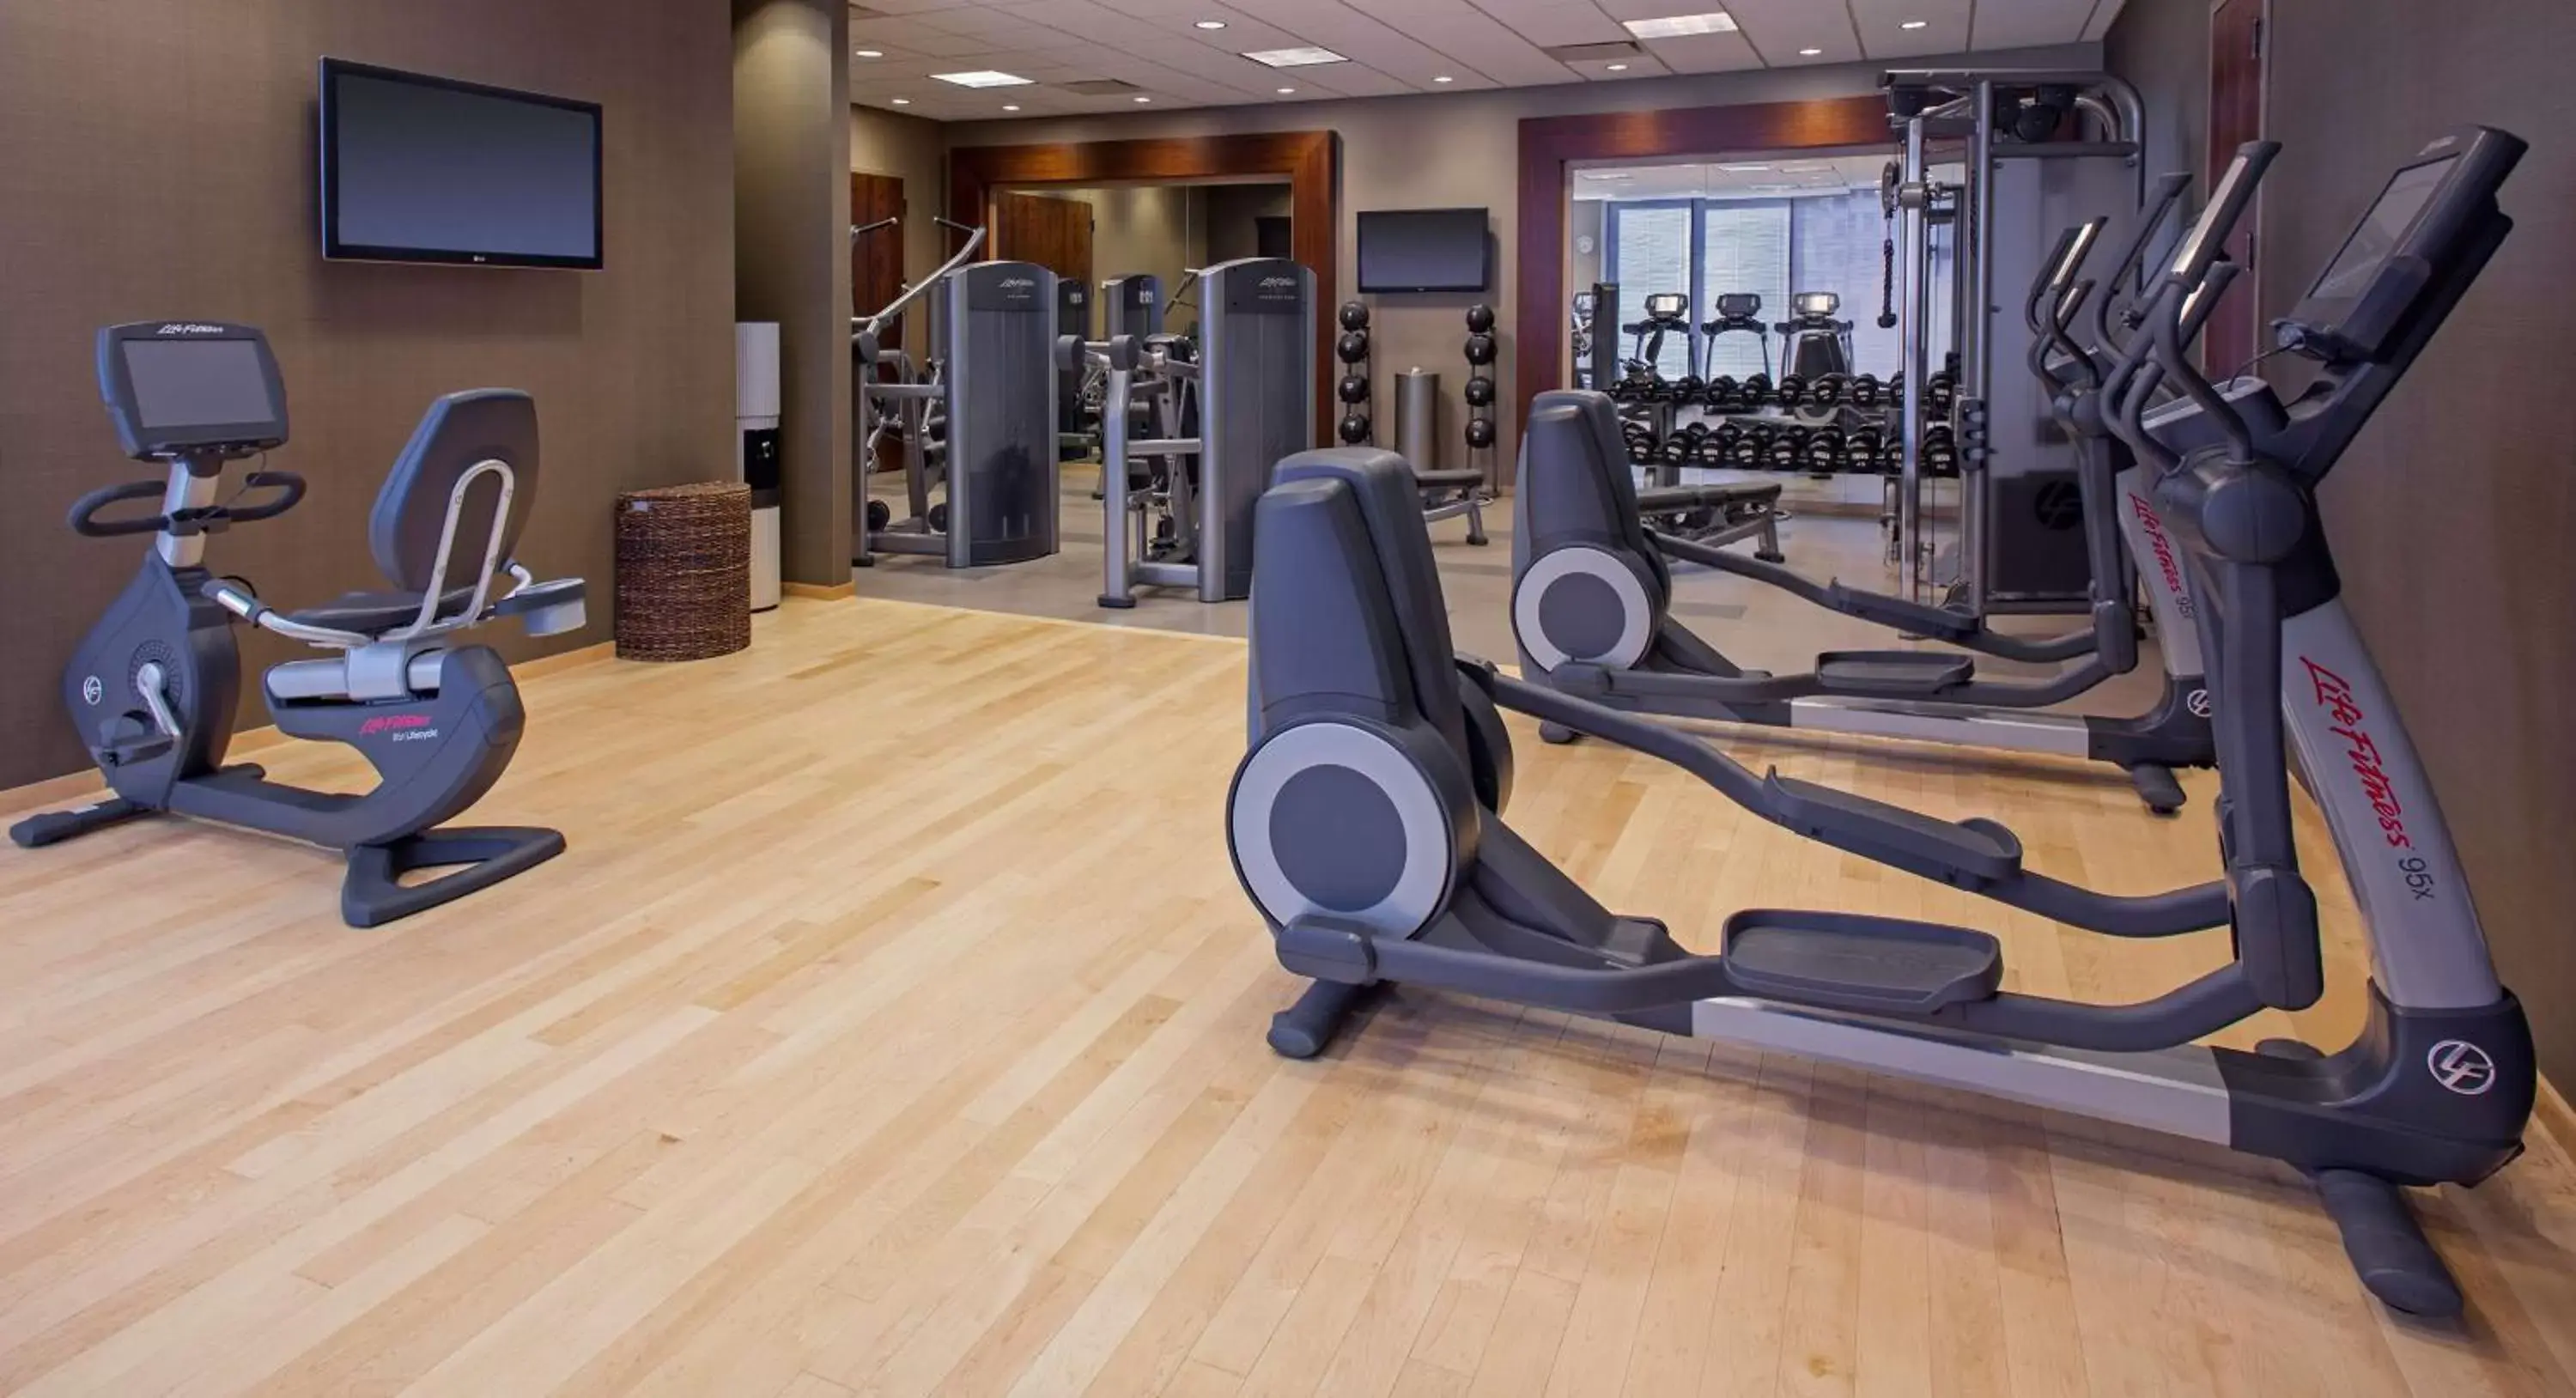 Fitness centre/facilities, Fitness Center/Facilities in Hyatt Regency Louisville